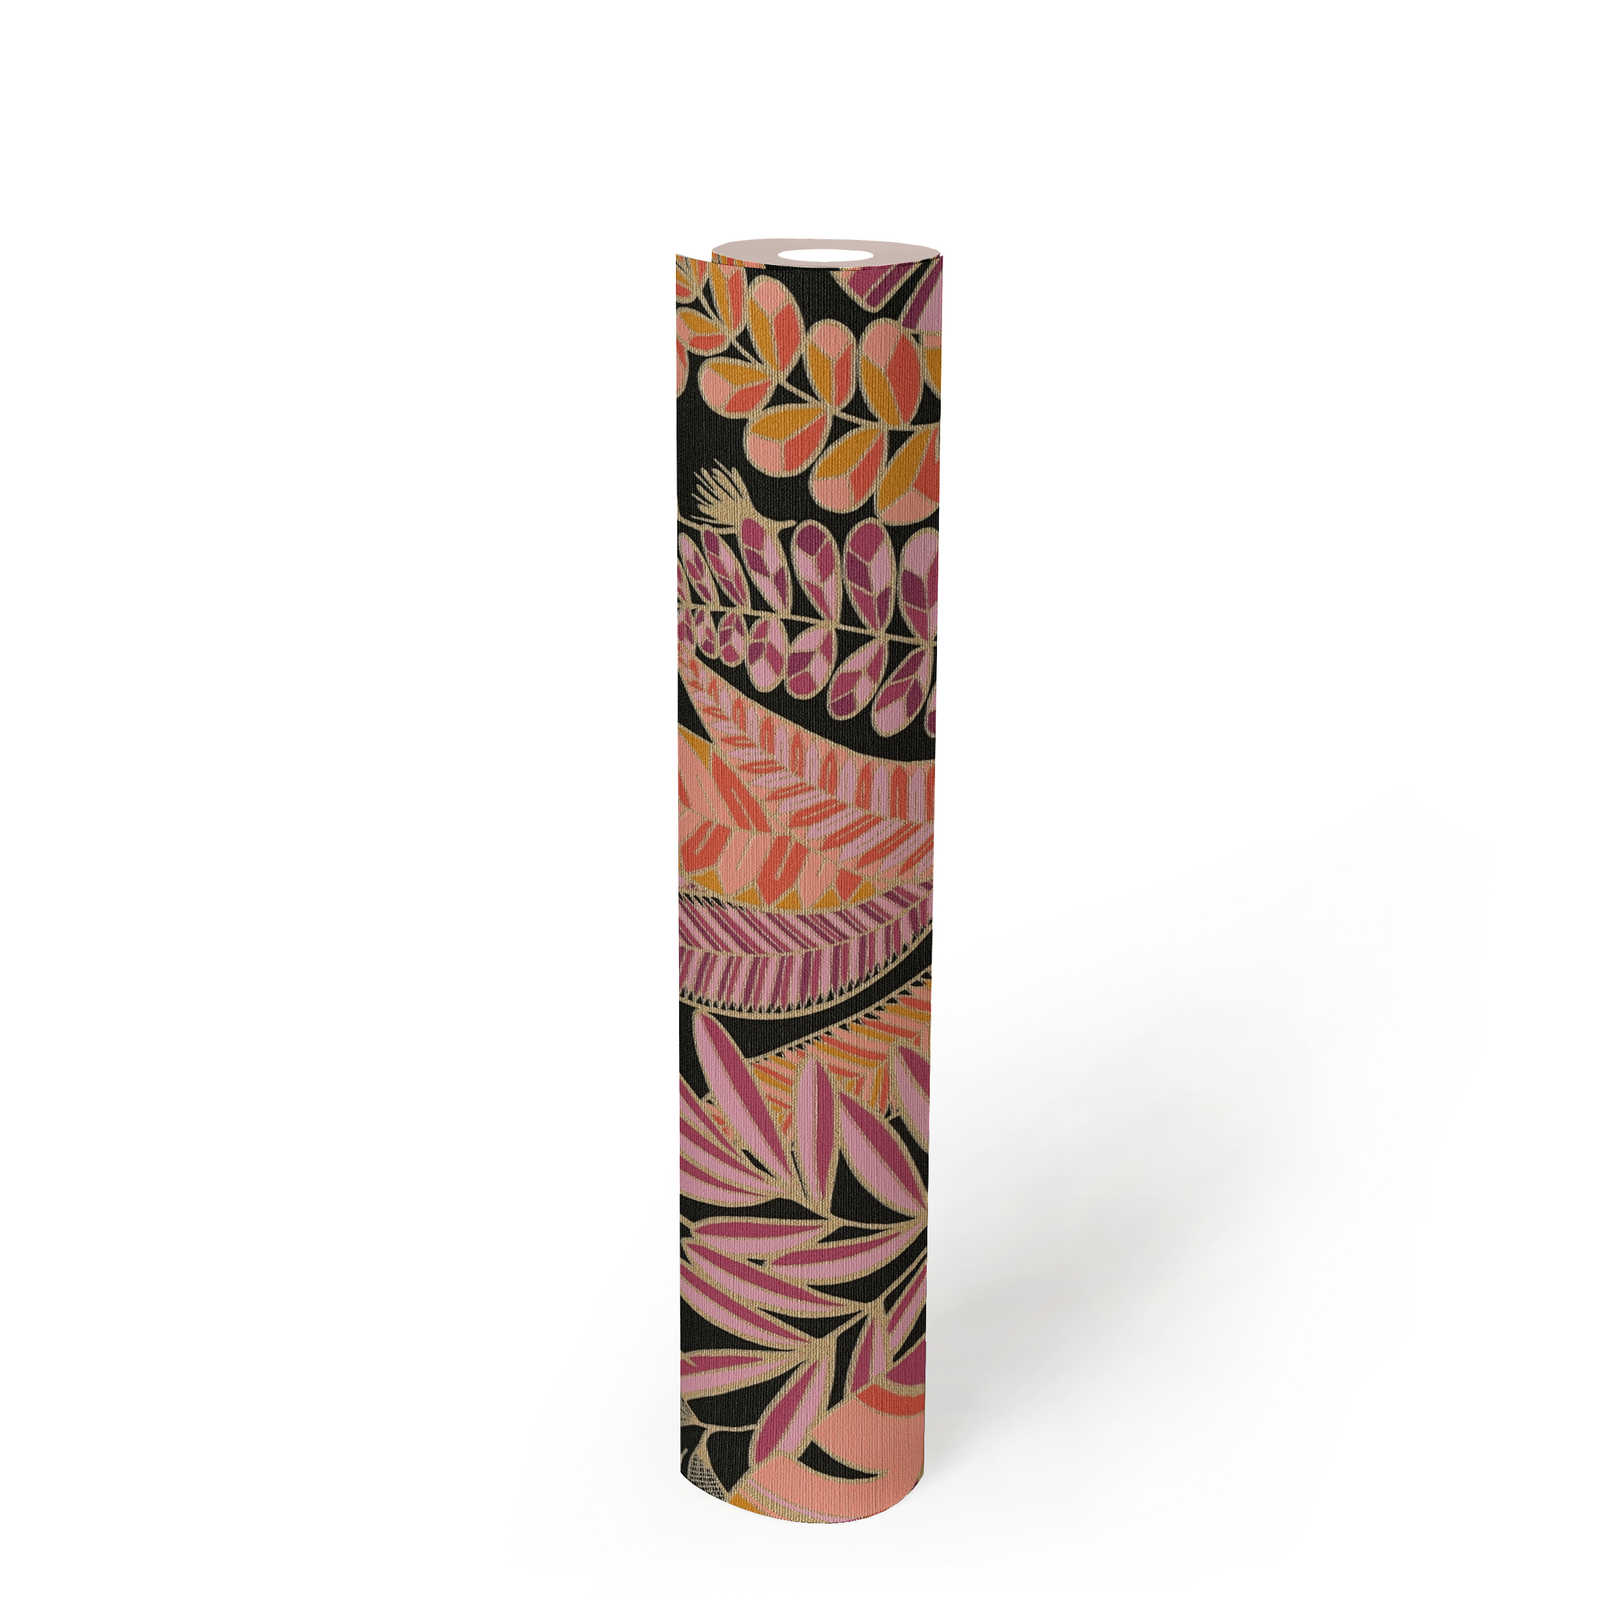             Vliestapete im auffälligen Stil mit großen Blättern – Schwarz, Pink, Orange
        